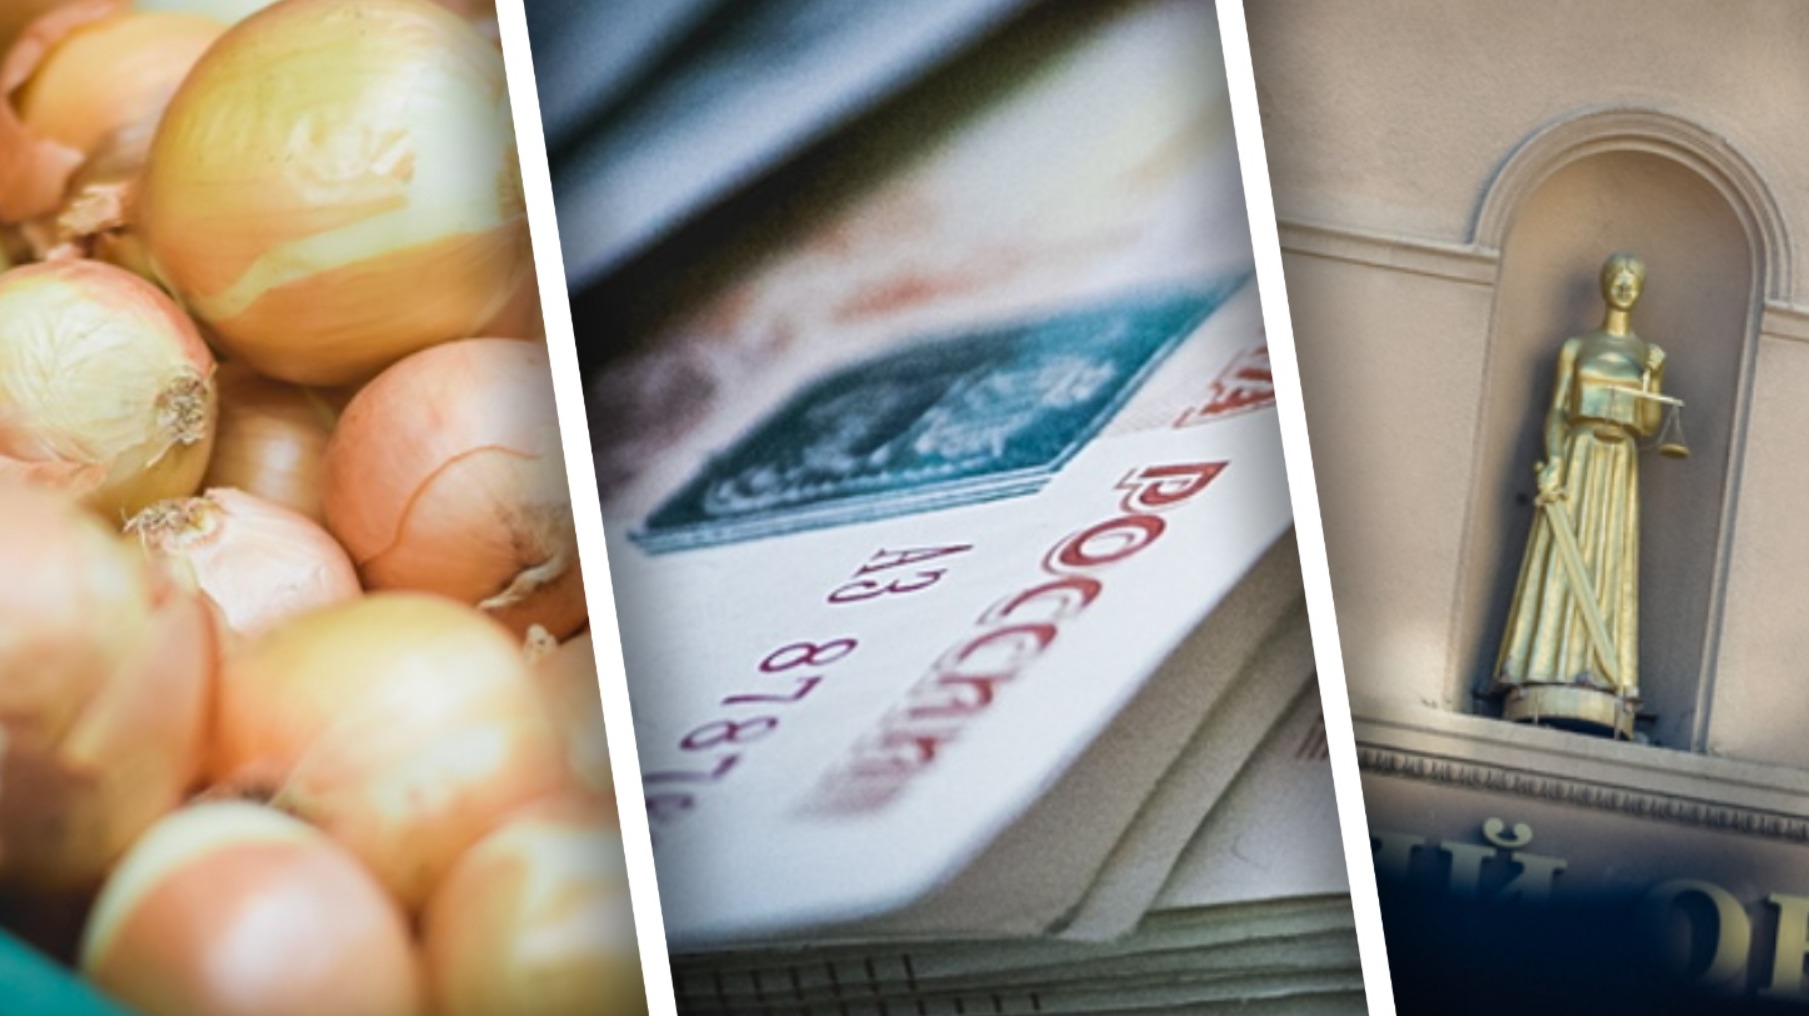 Штрафы, цены и хищения: все деньги Волгограда в пятничных новостях